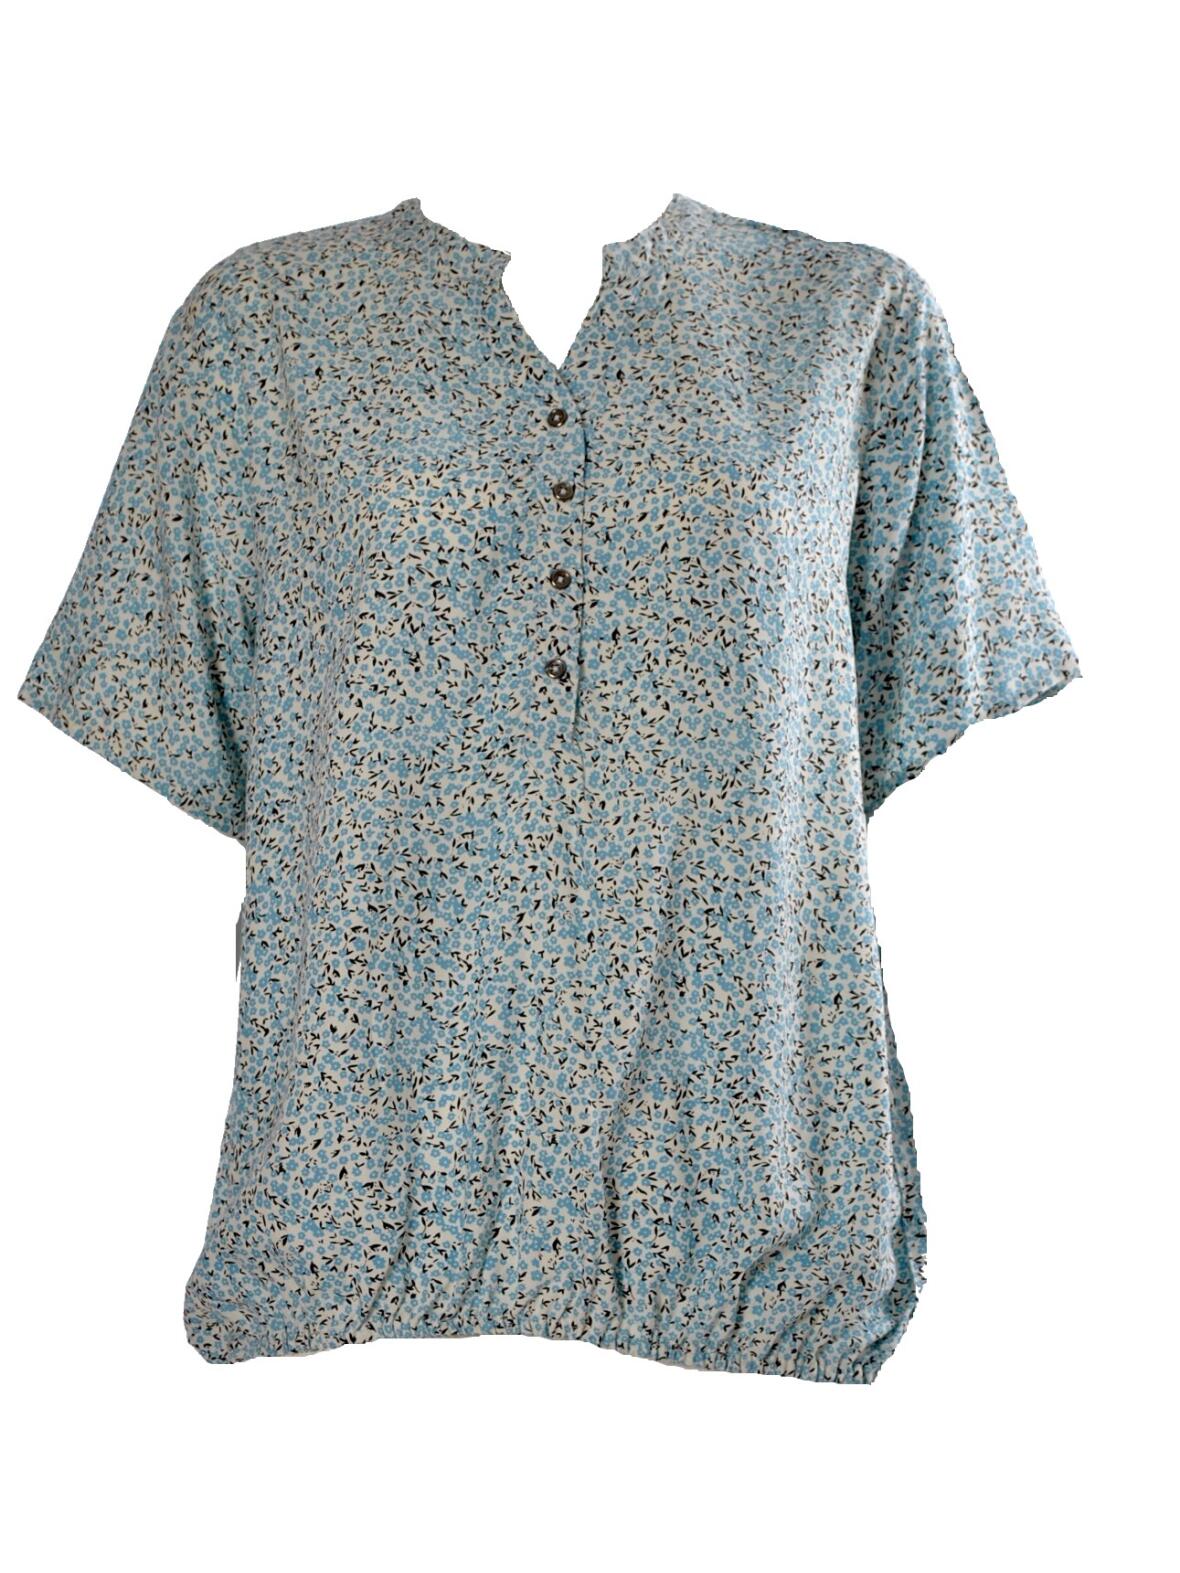 Boutique Dorthe - Dny lyseblå bluse